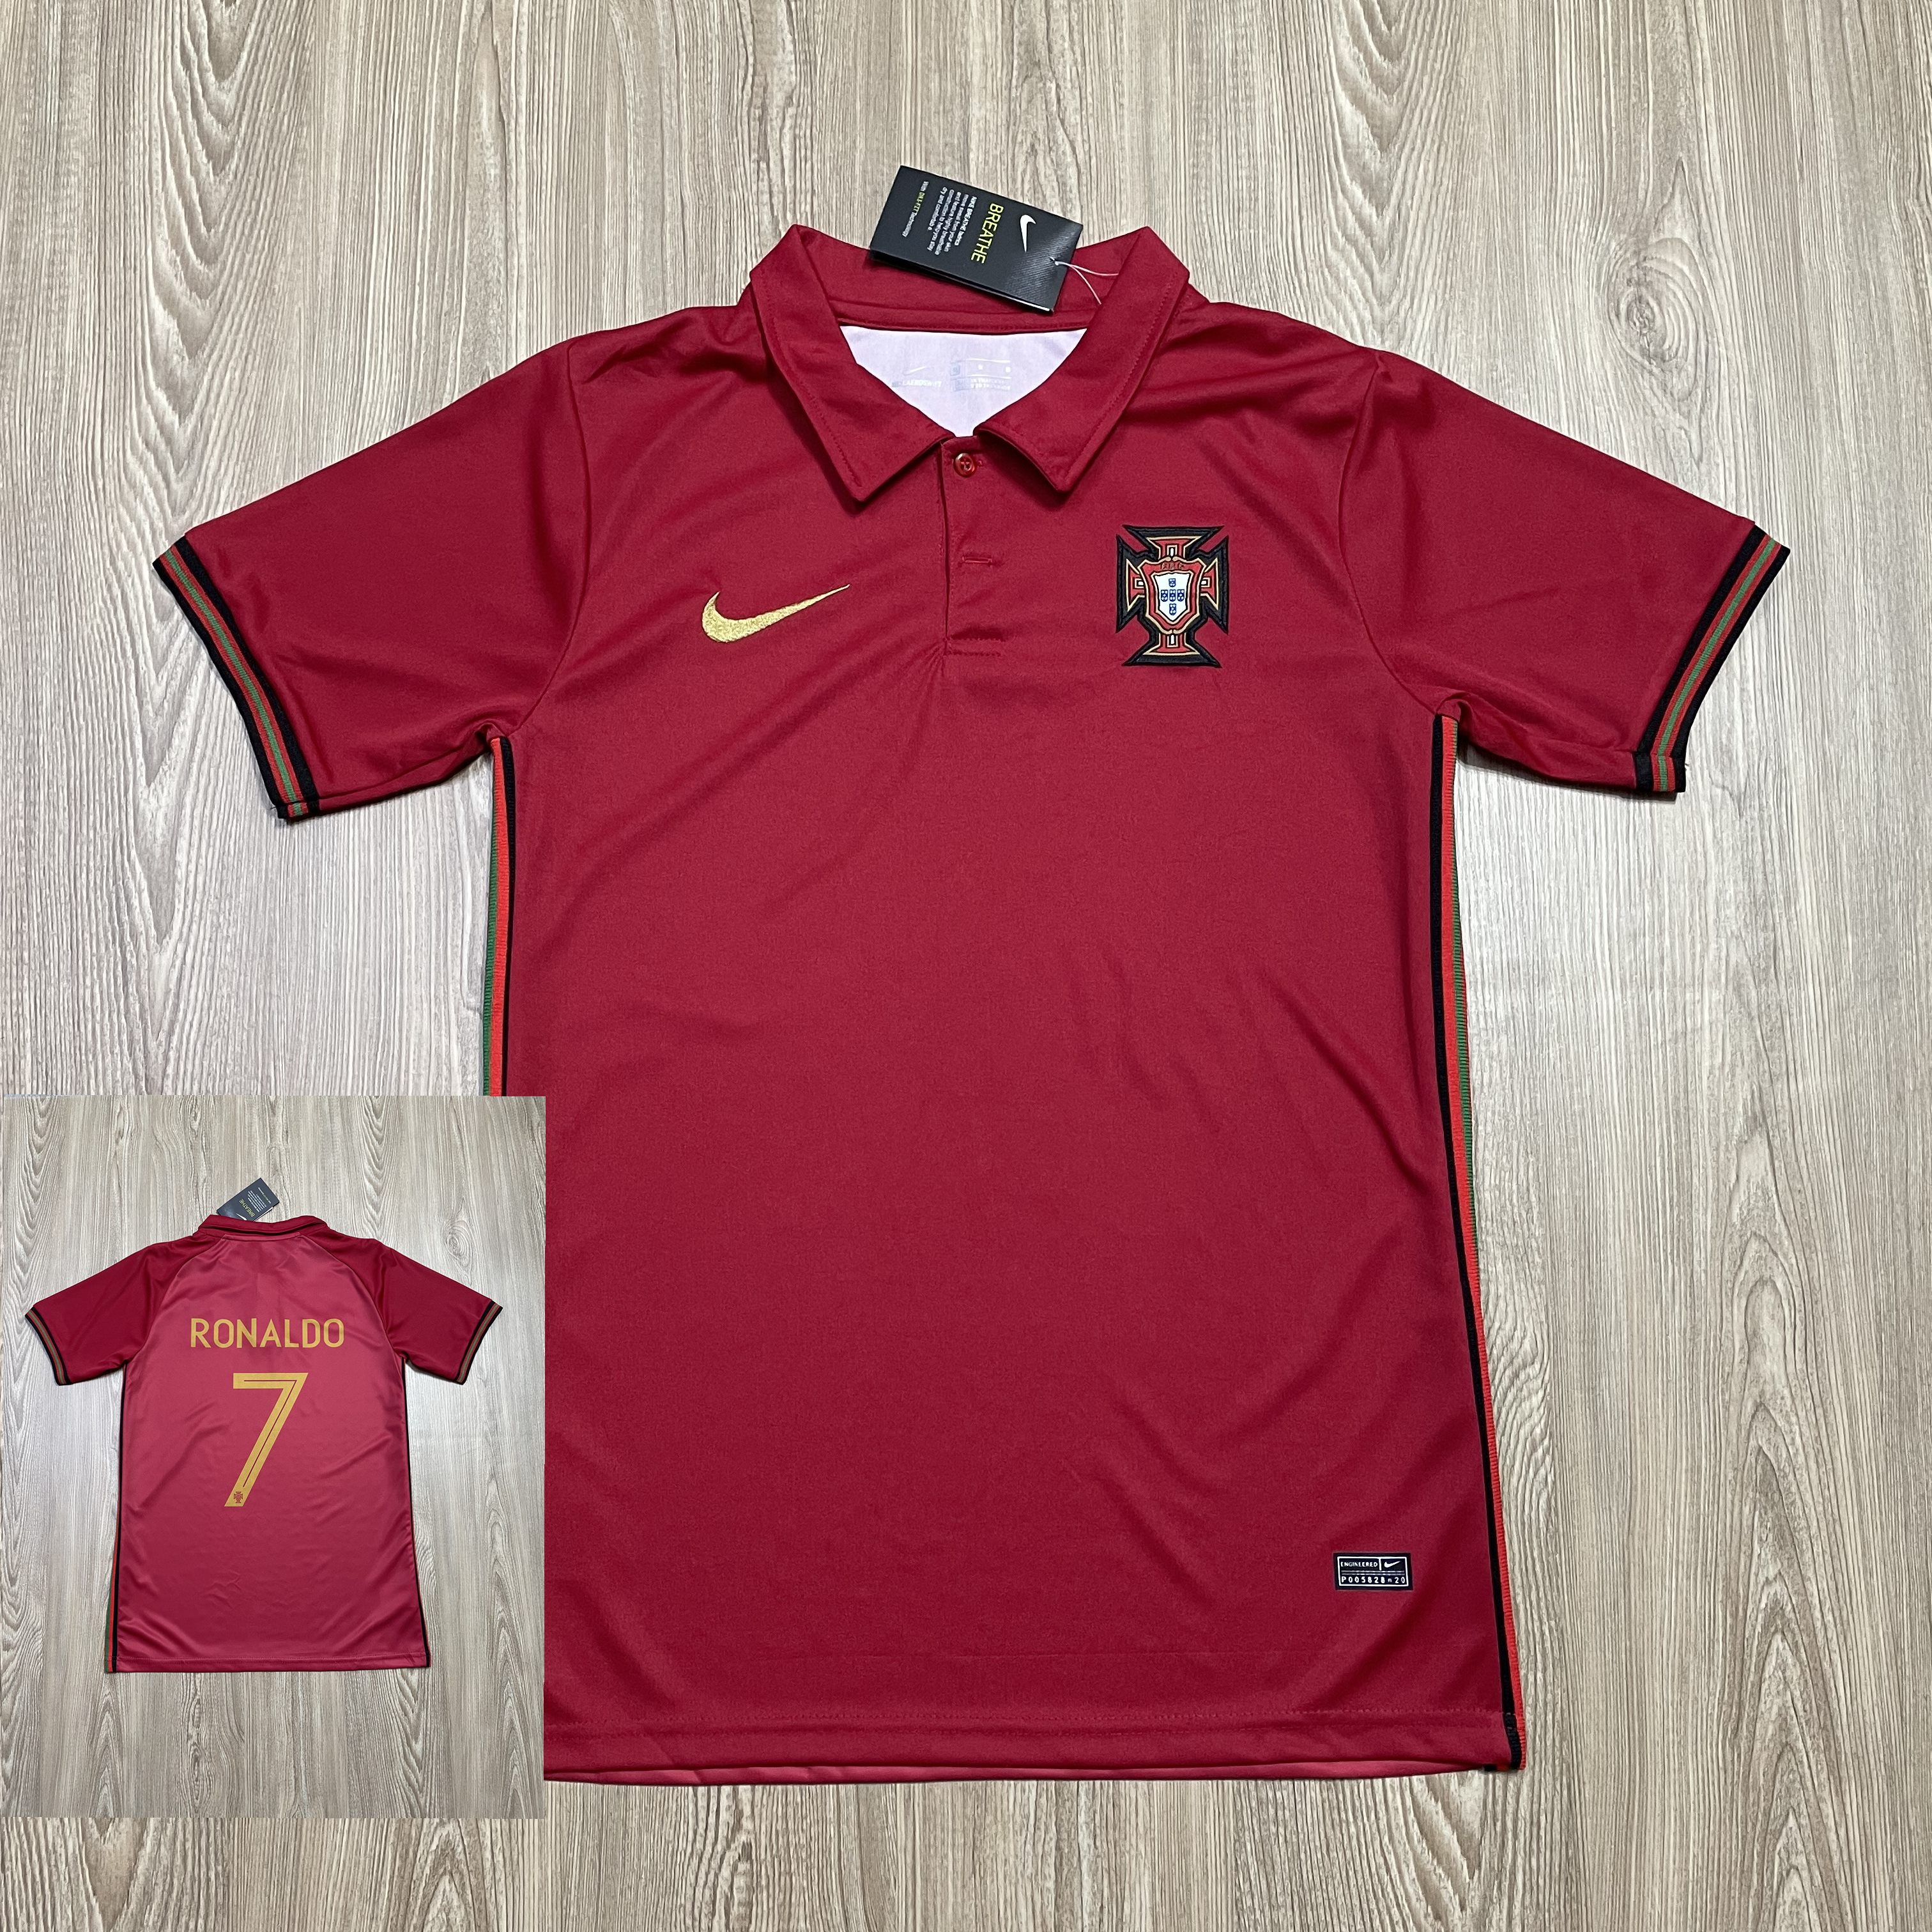 เสื้อสโมสรฟุตบอล เสื้อบอล เสื้อคอปก เสื้อกีฬา ทีมฺ Portugal ใส่สบาย ผ้ายึด รับประกันคุณภาพ ผ้าเกรดA